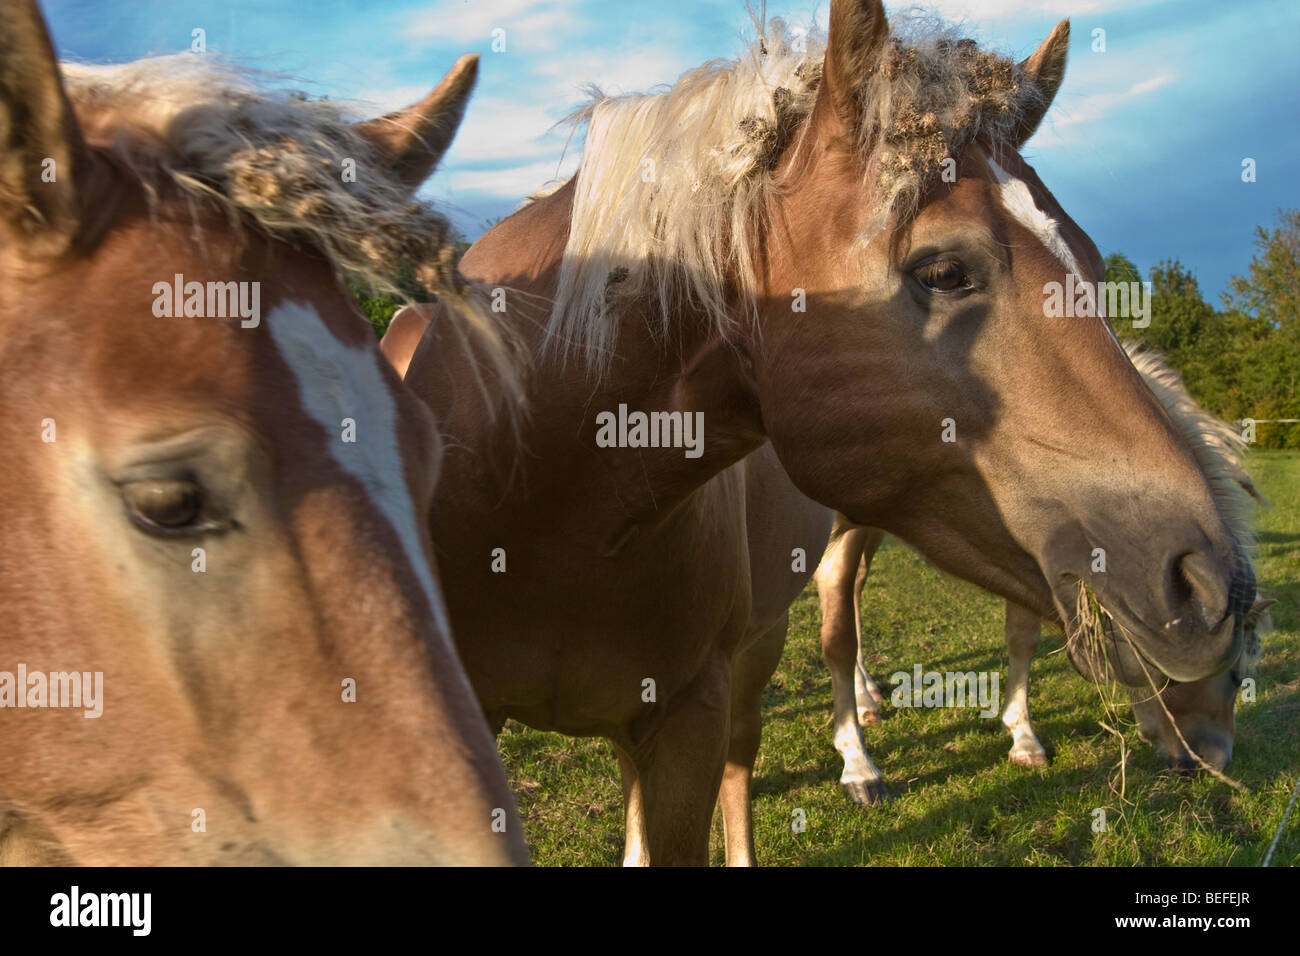 Golden palomino horses, Germany, Thuringia Stock Photo